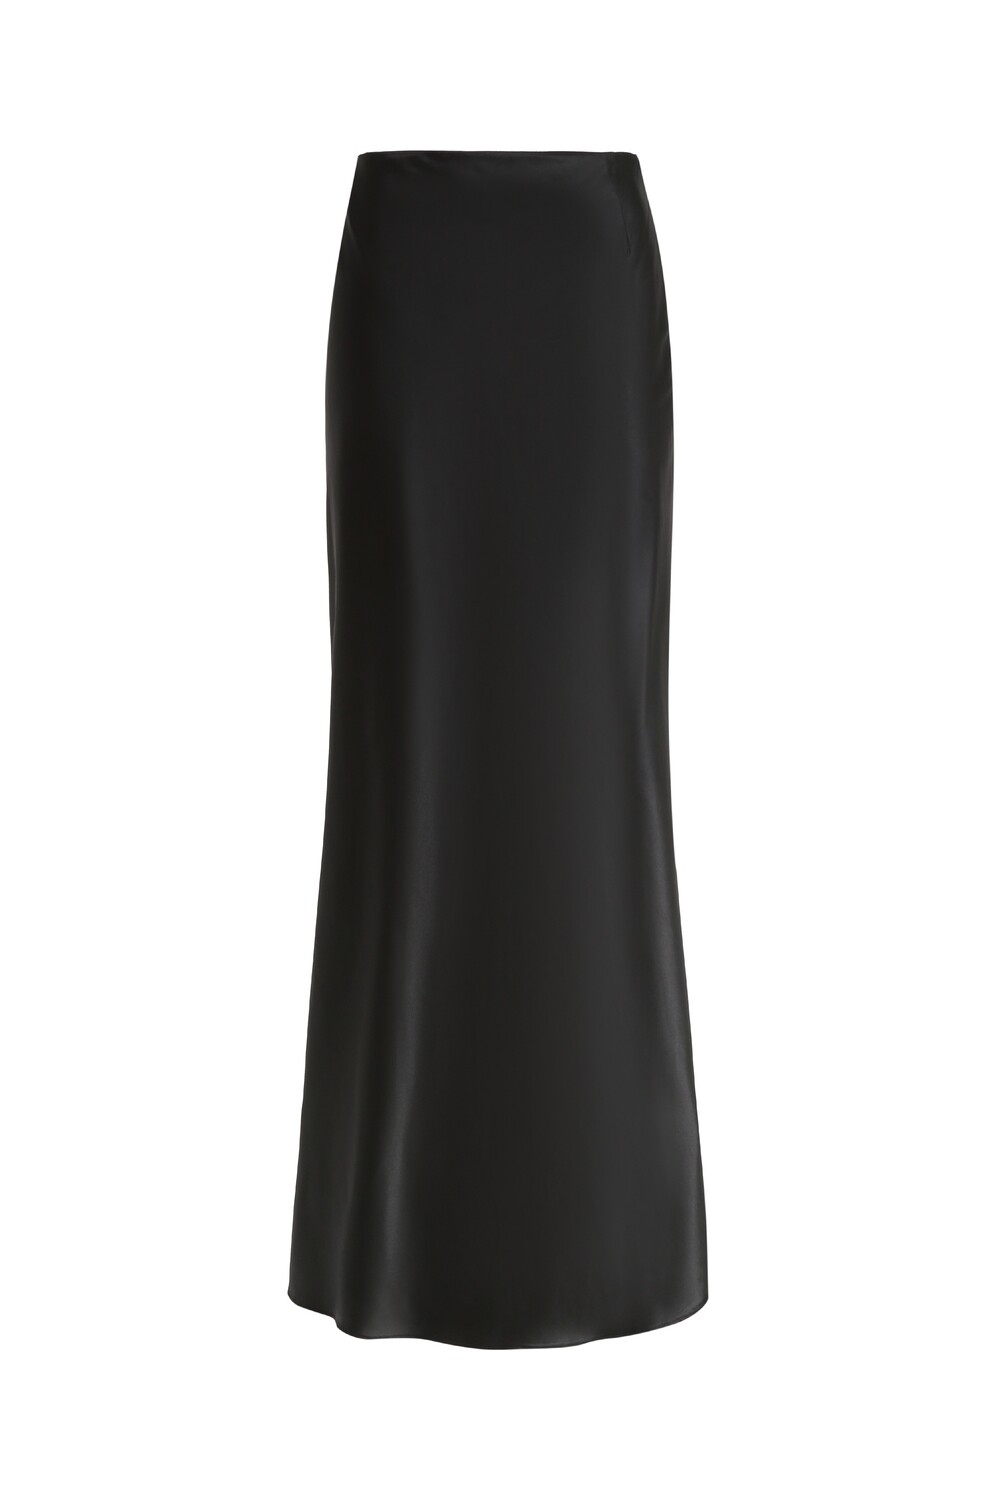 Silk long skirt in black